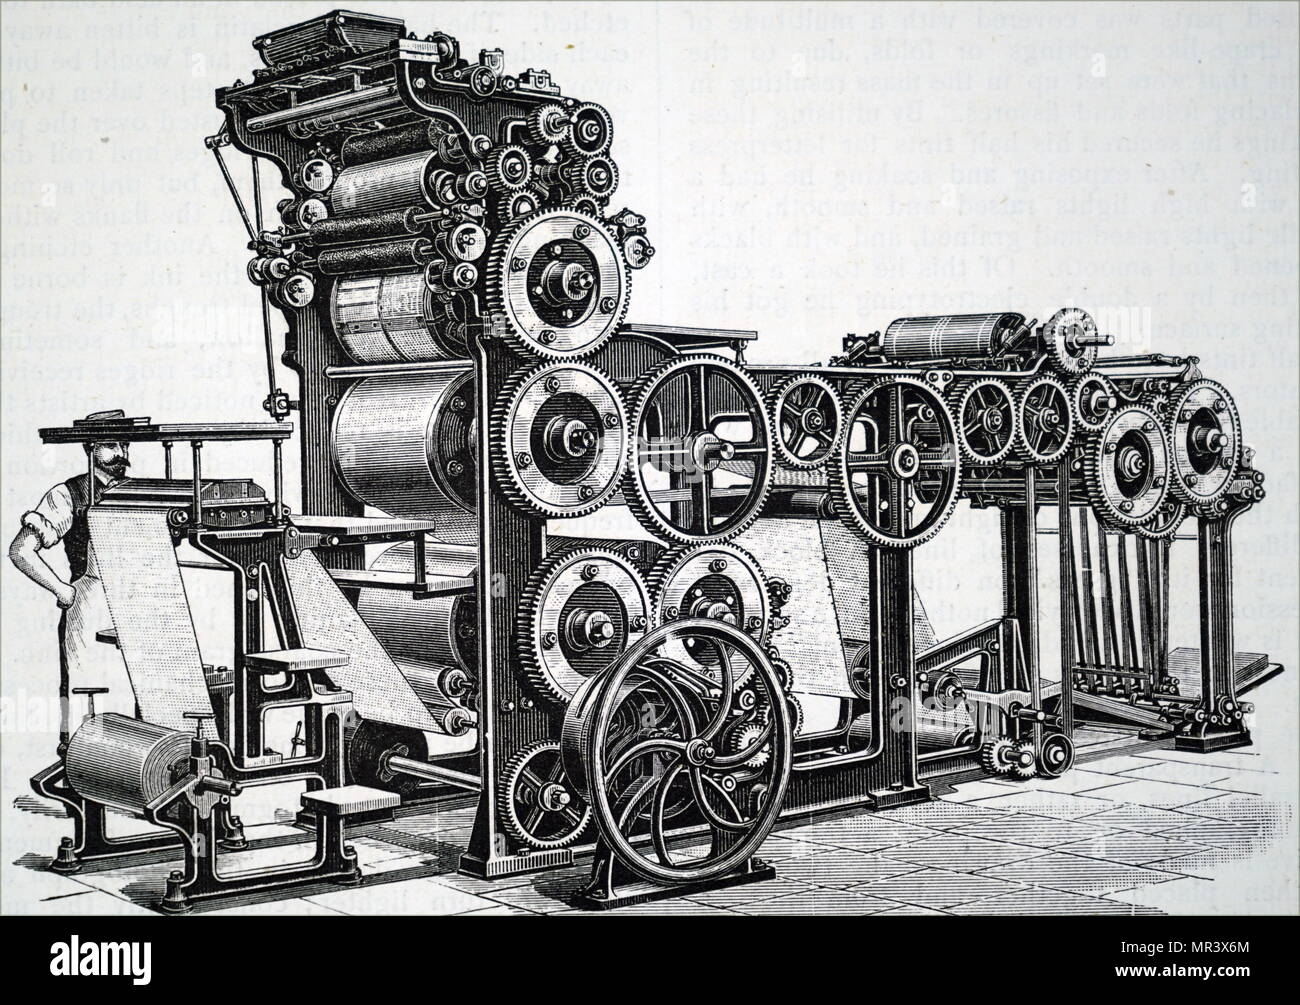 Gravur Darstellung rotary Marioni drücken Sie die Taste zu illustrierten Arbeit verwendet. Diese Maschine konnte 7.000 Exemplare pro Stunde drehen Sie mit harten Verpackung auf trockenem Papier. Vom 19. Jahrhundert Stockfoto